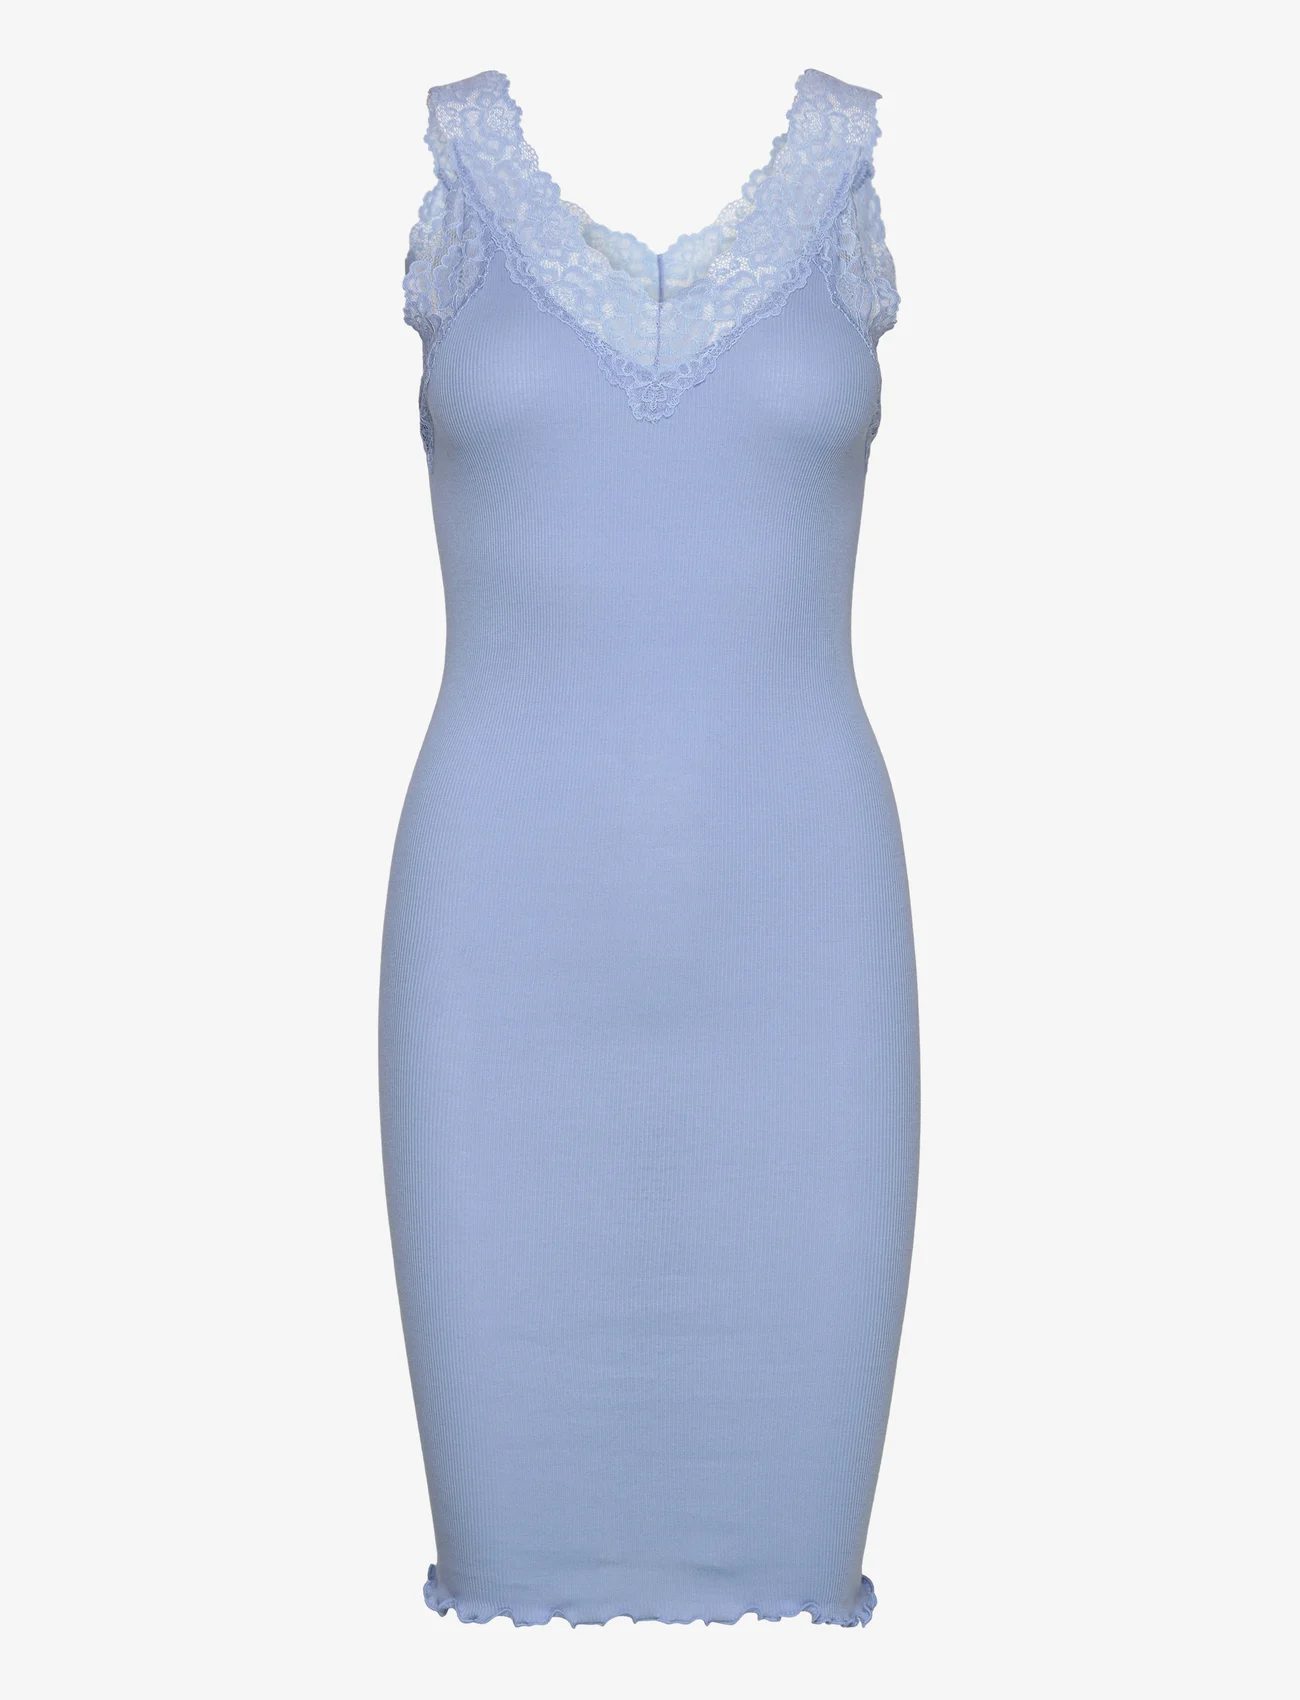 Rosemunde - Organic dress - etuikleider - blue allure - 0